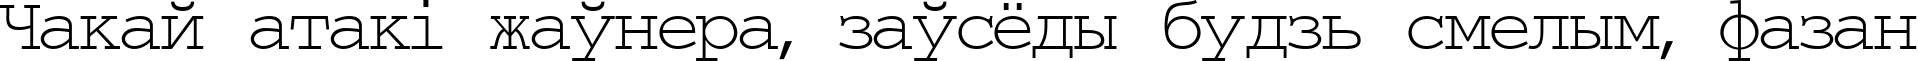 Пример написания шрифтом TypeWriter Normal текста на белорусском